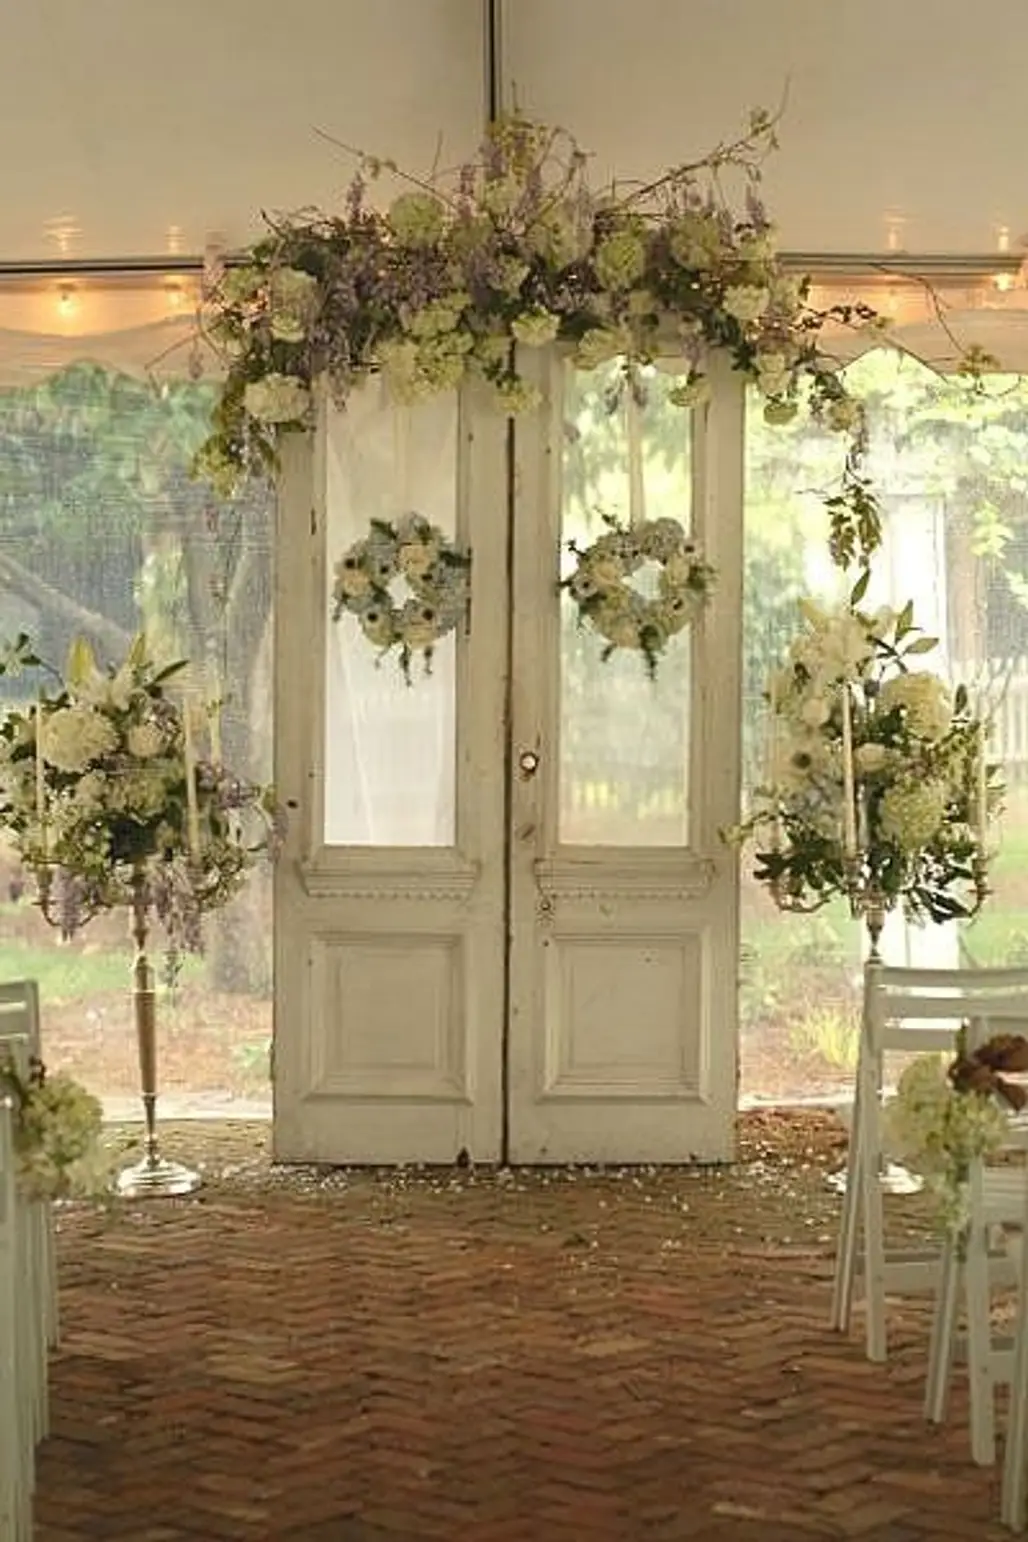 Flower Festooned Doors